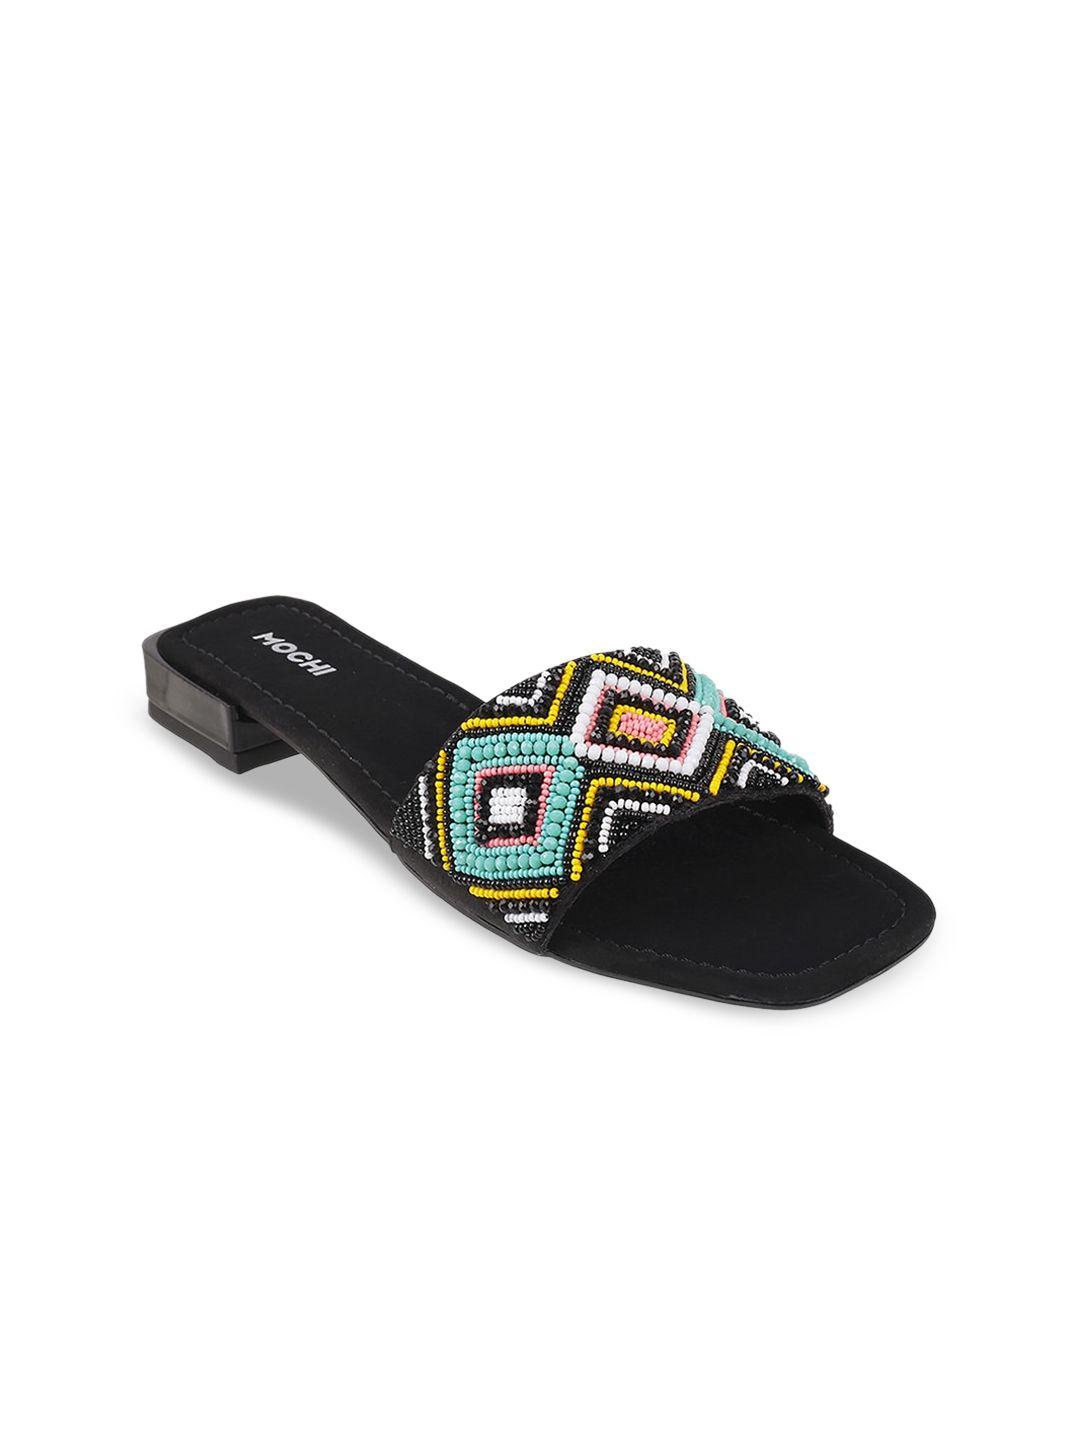 mochi women black open toe flats